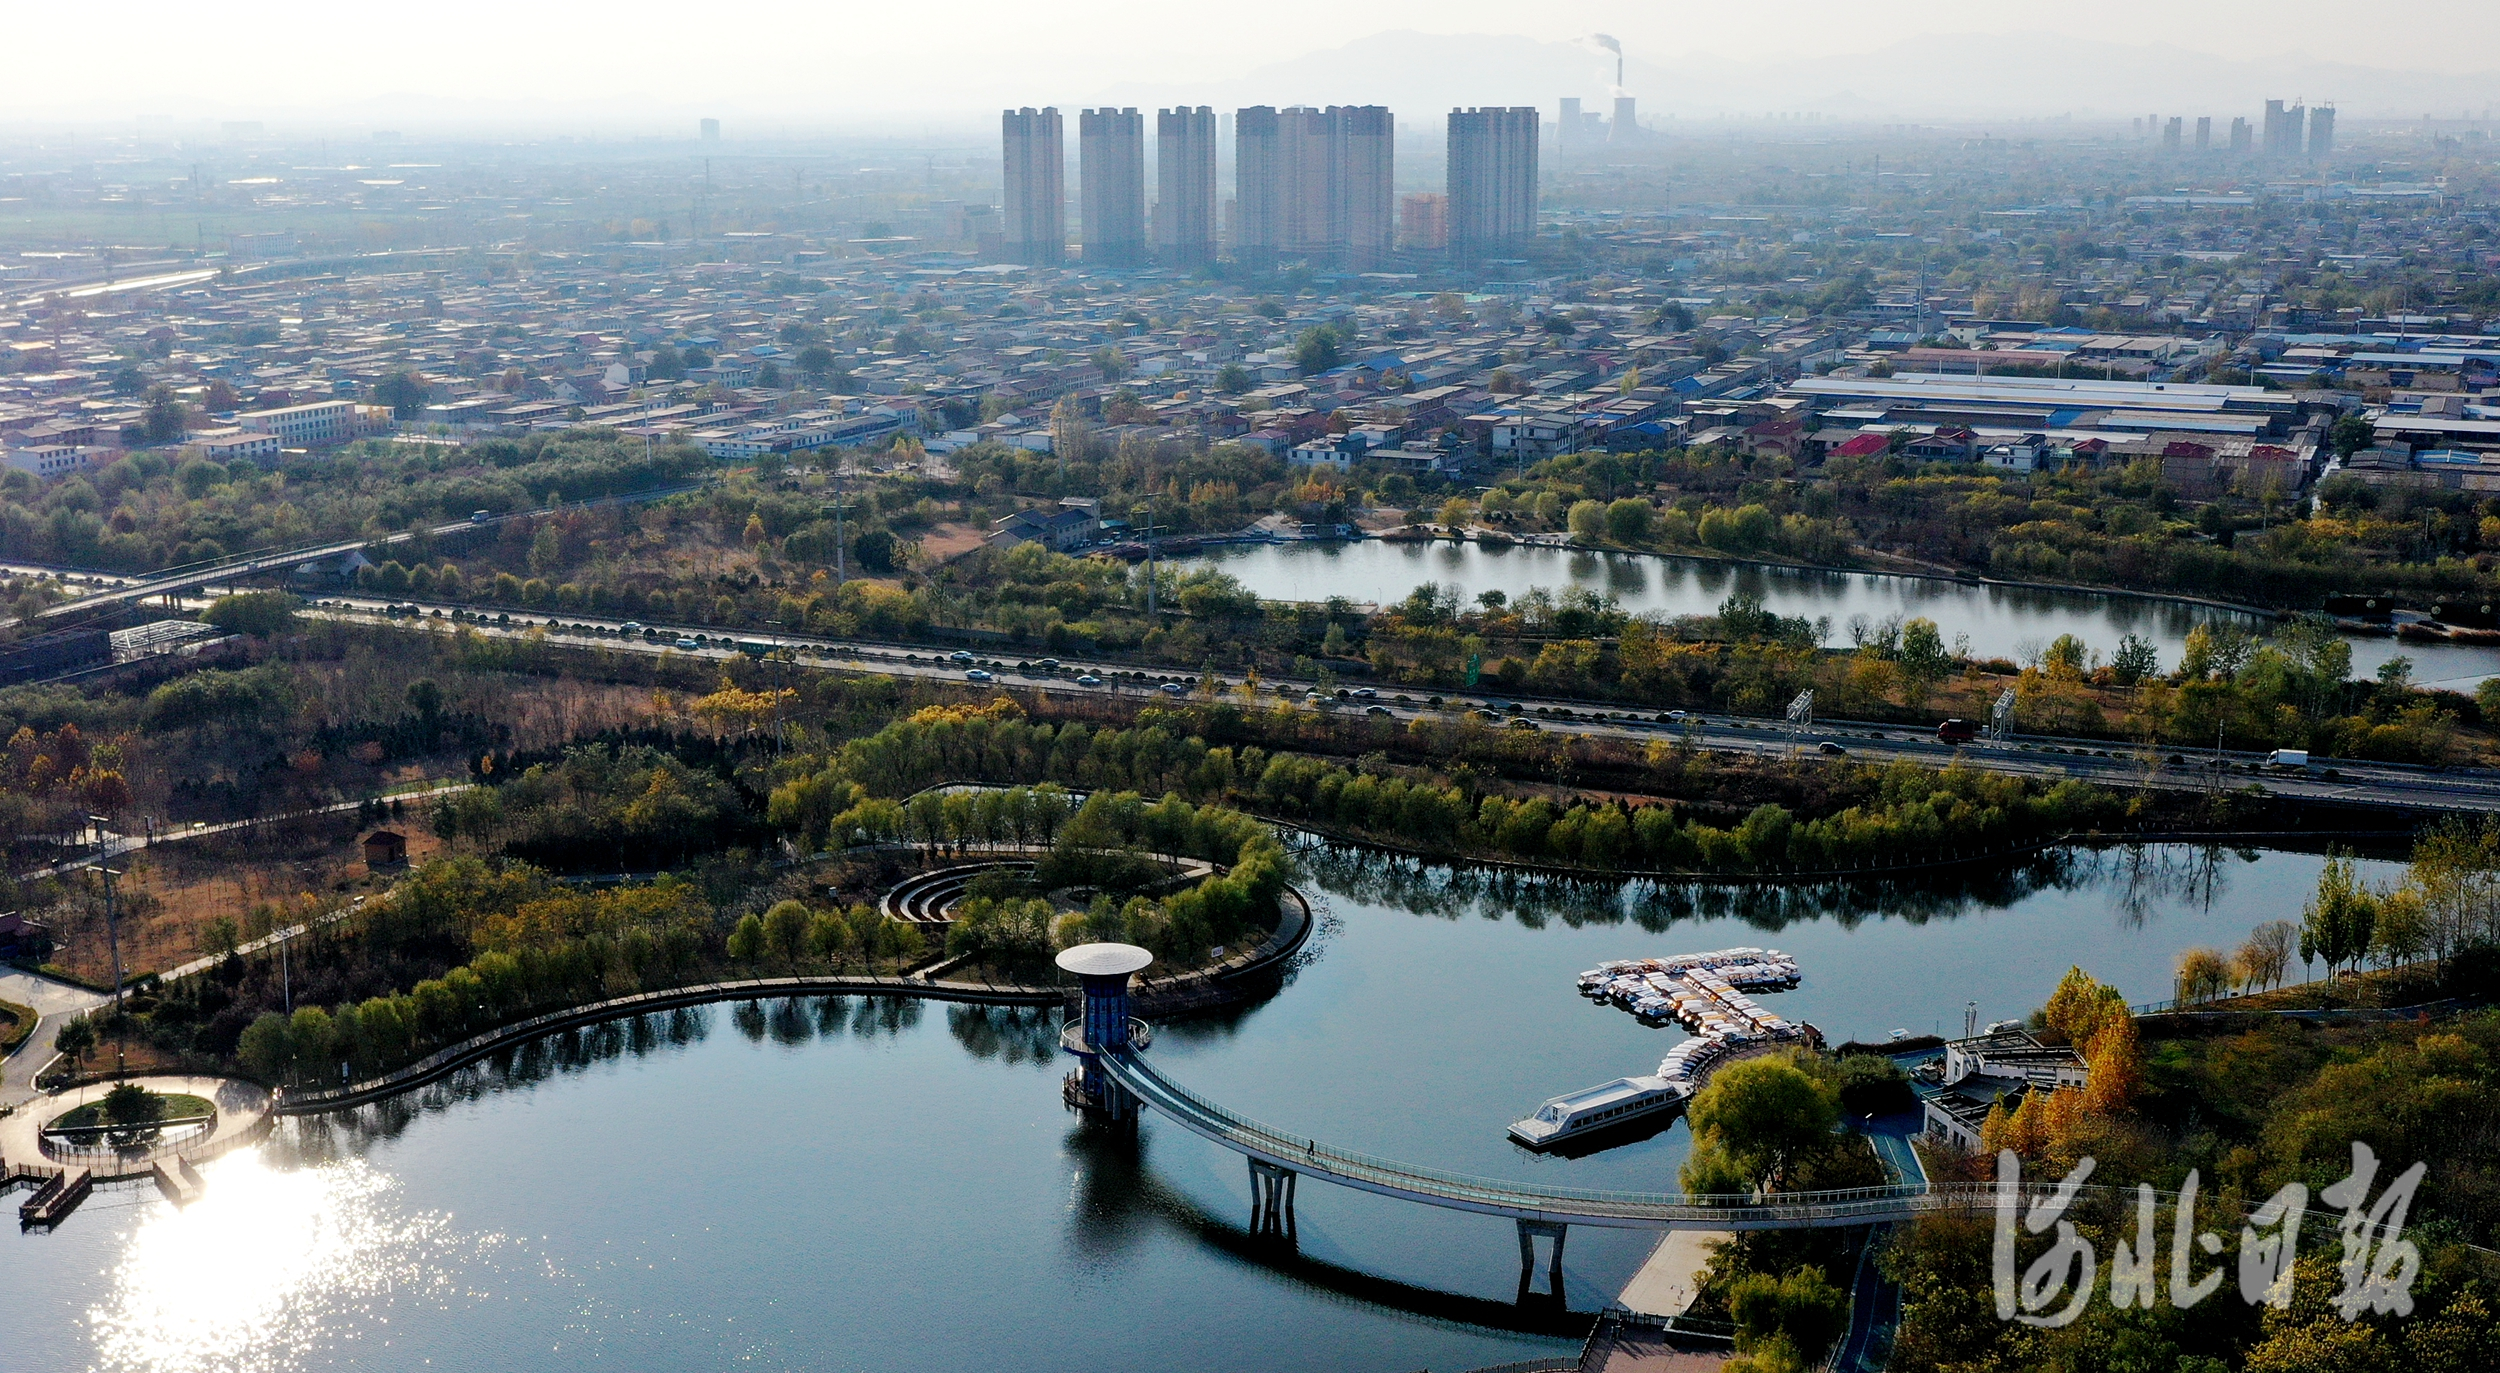 2020年11月19日拍摄的河北省石家庄市环城水系泊水公园 (无人机照片)